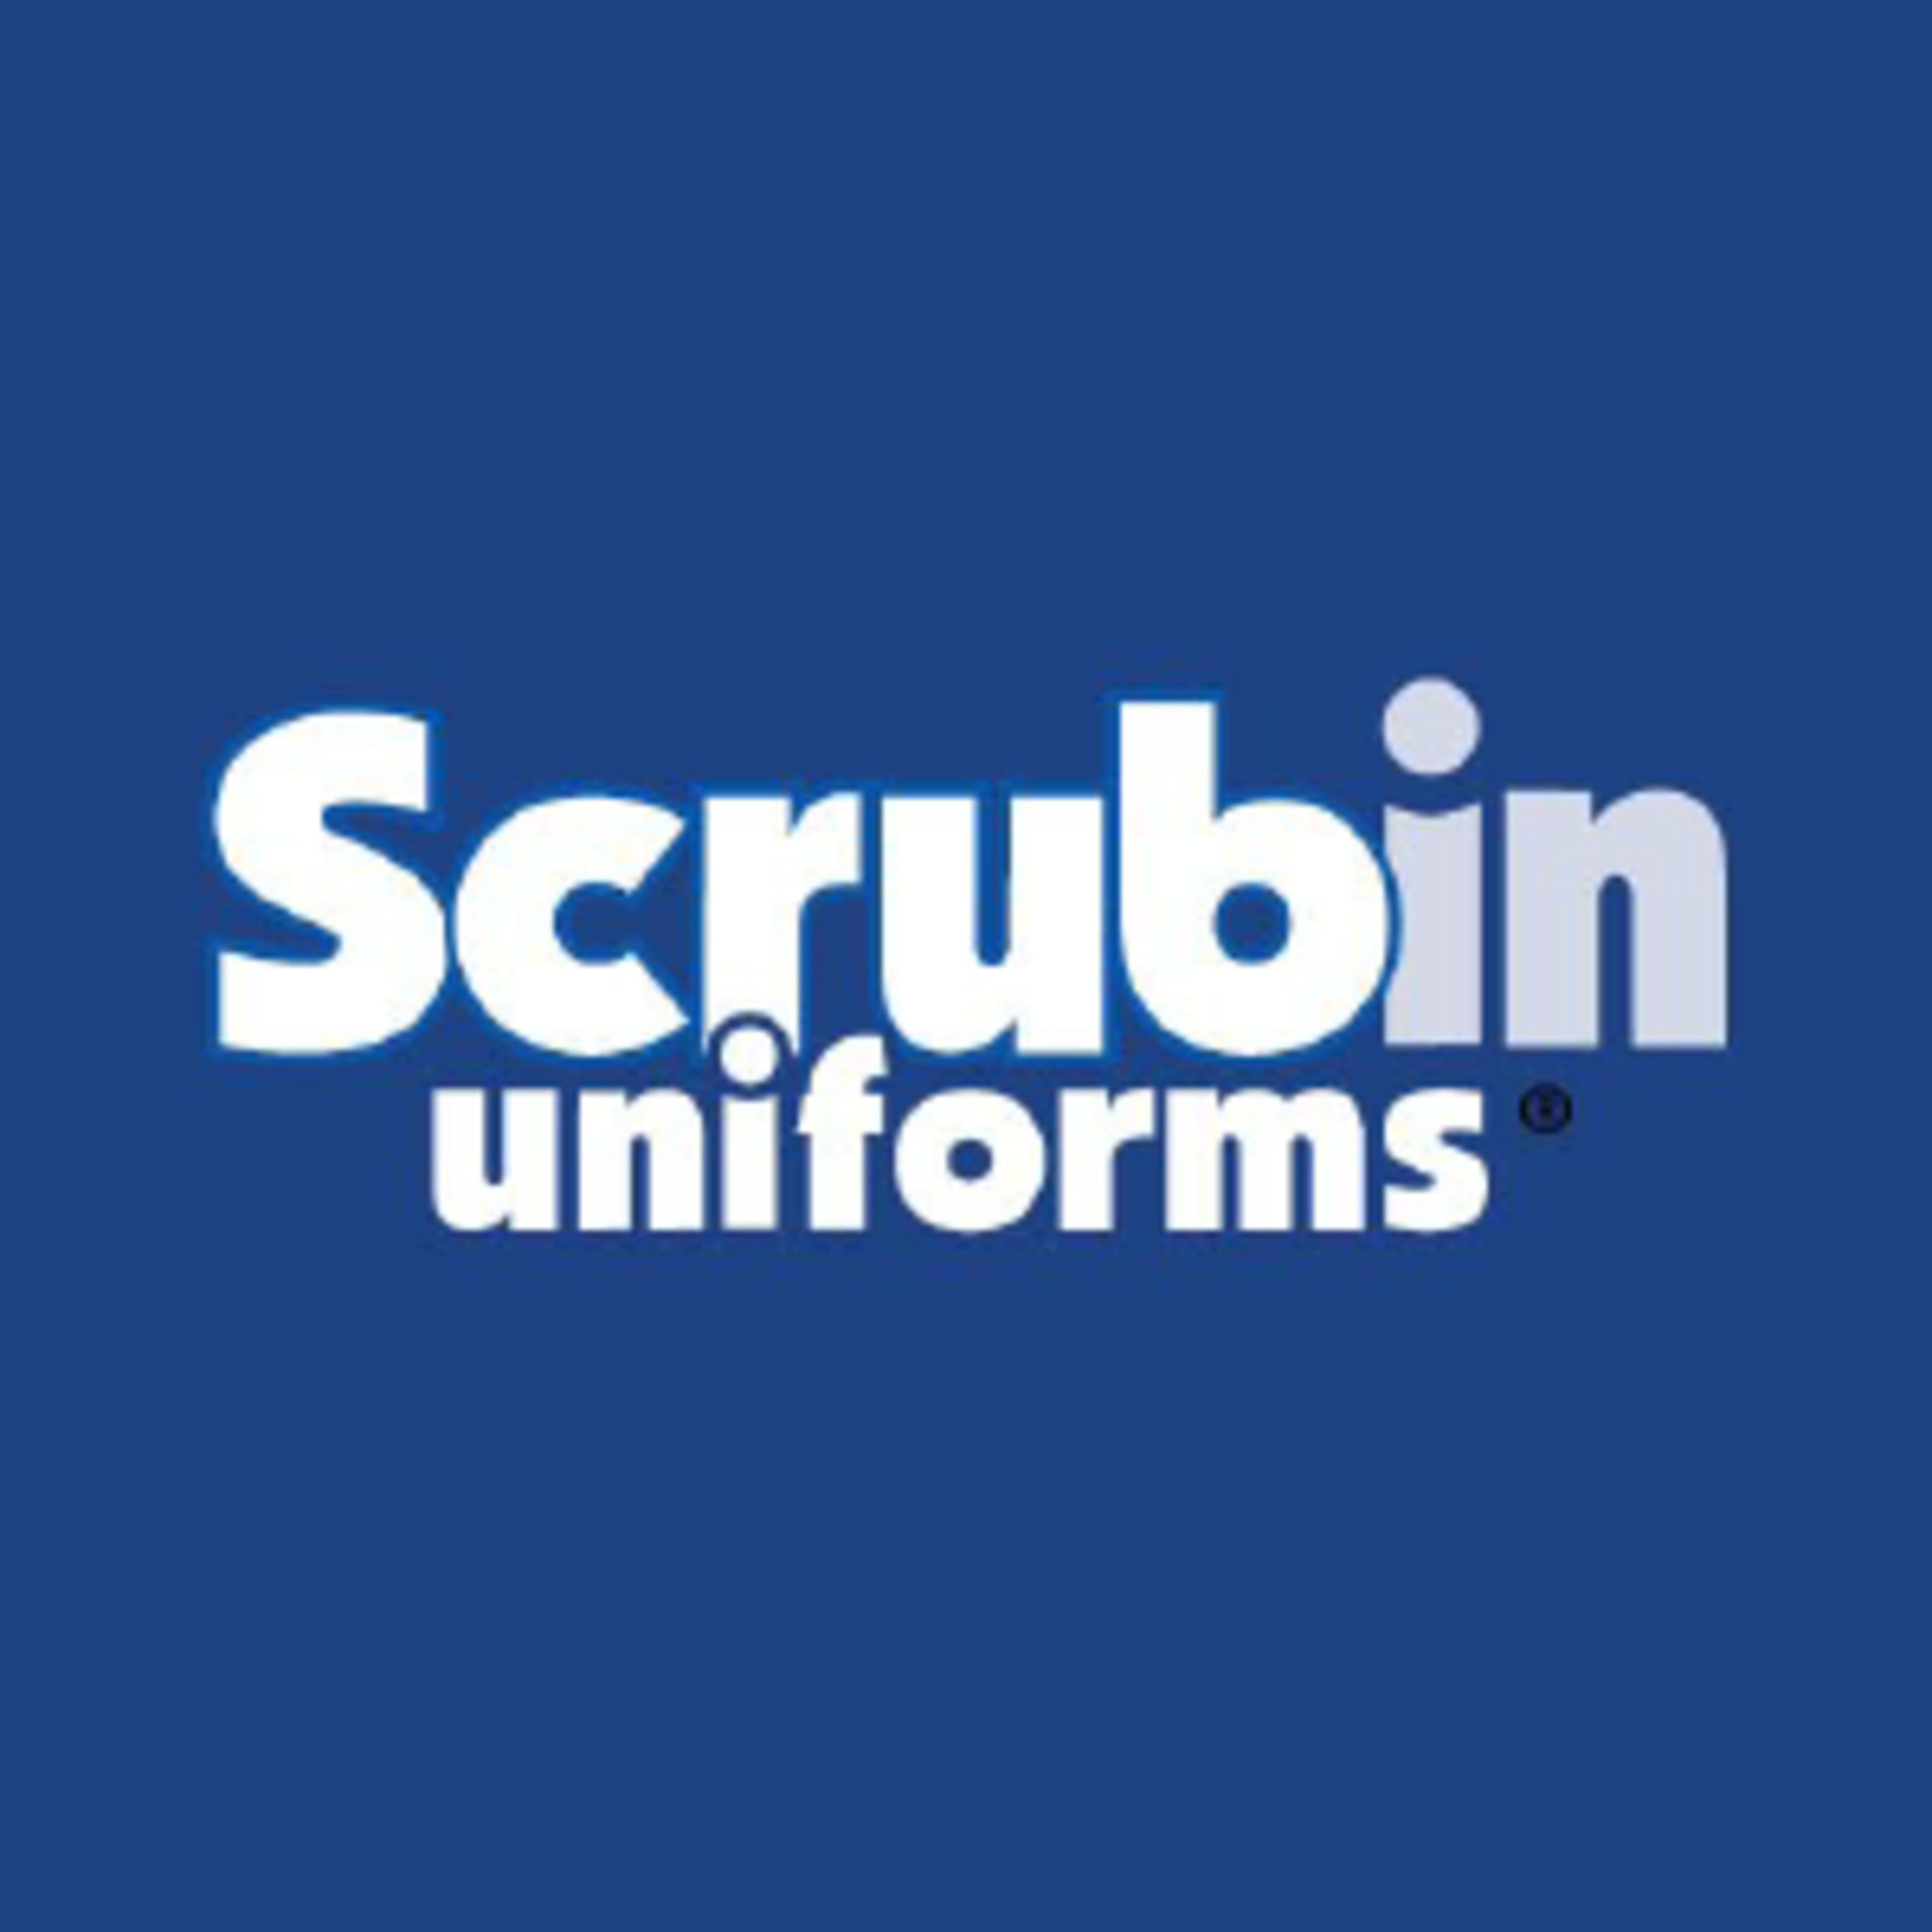 Scrubin UniformsCode